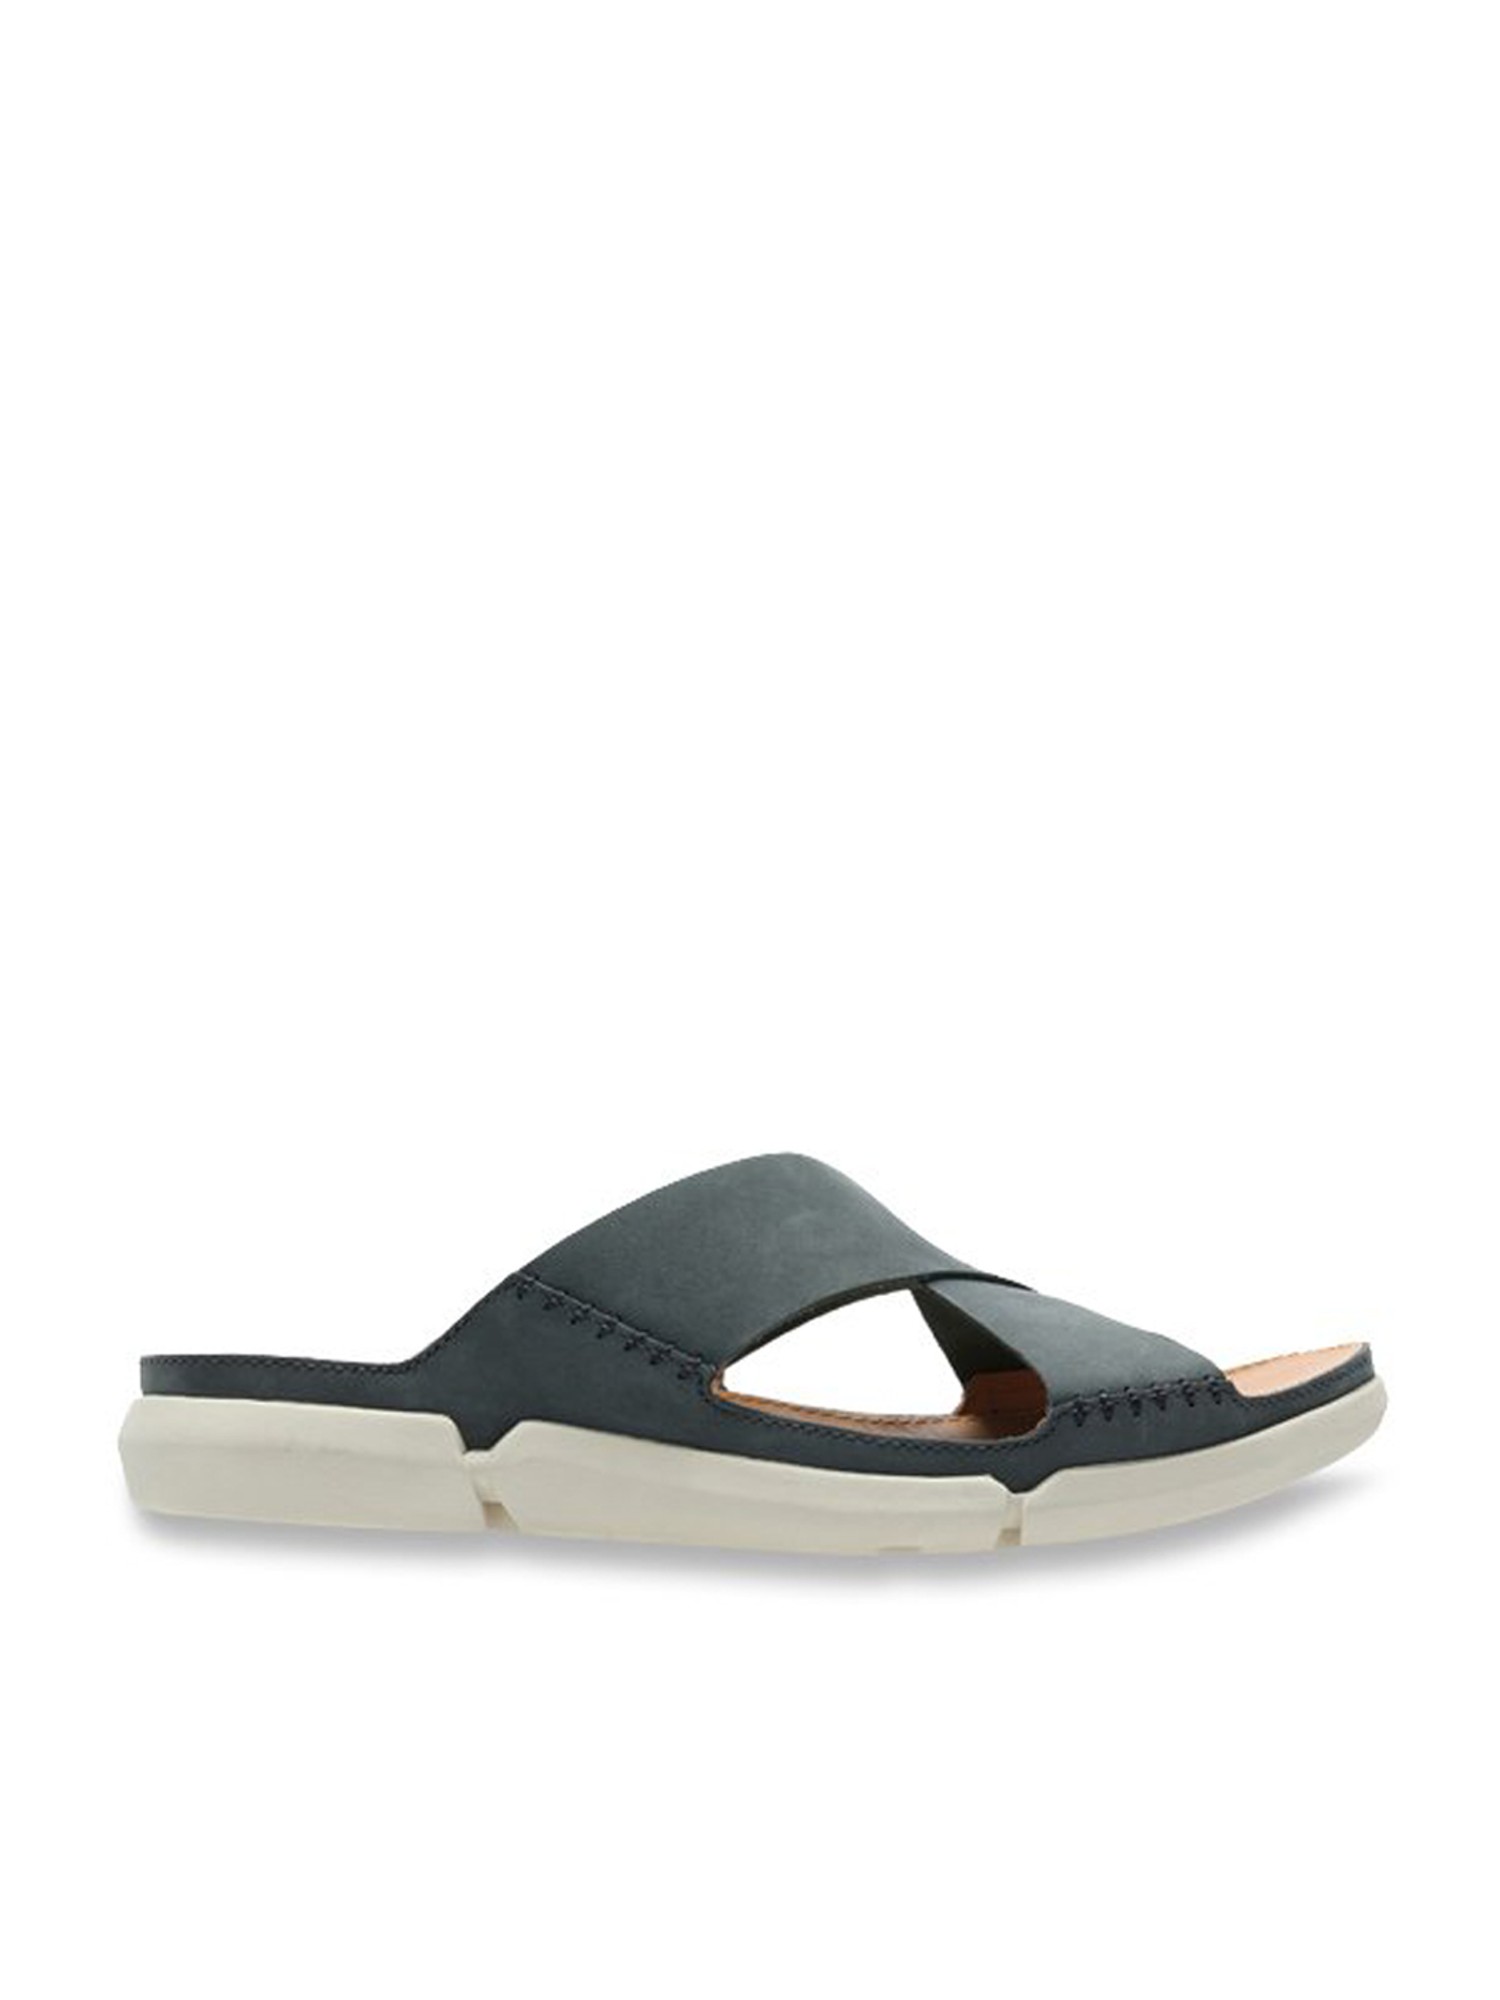 Buy Black Sandals for Men by CLARKS Online  Ajiocom